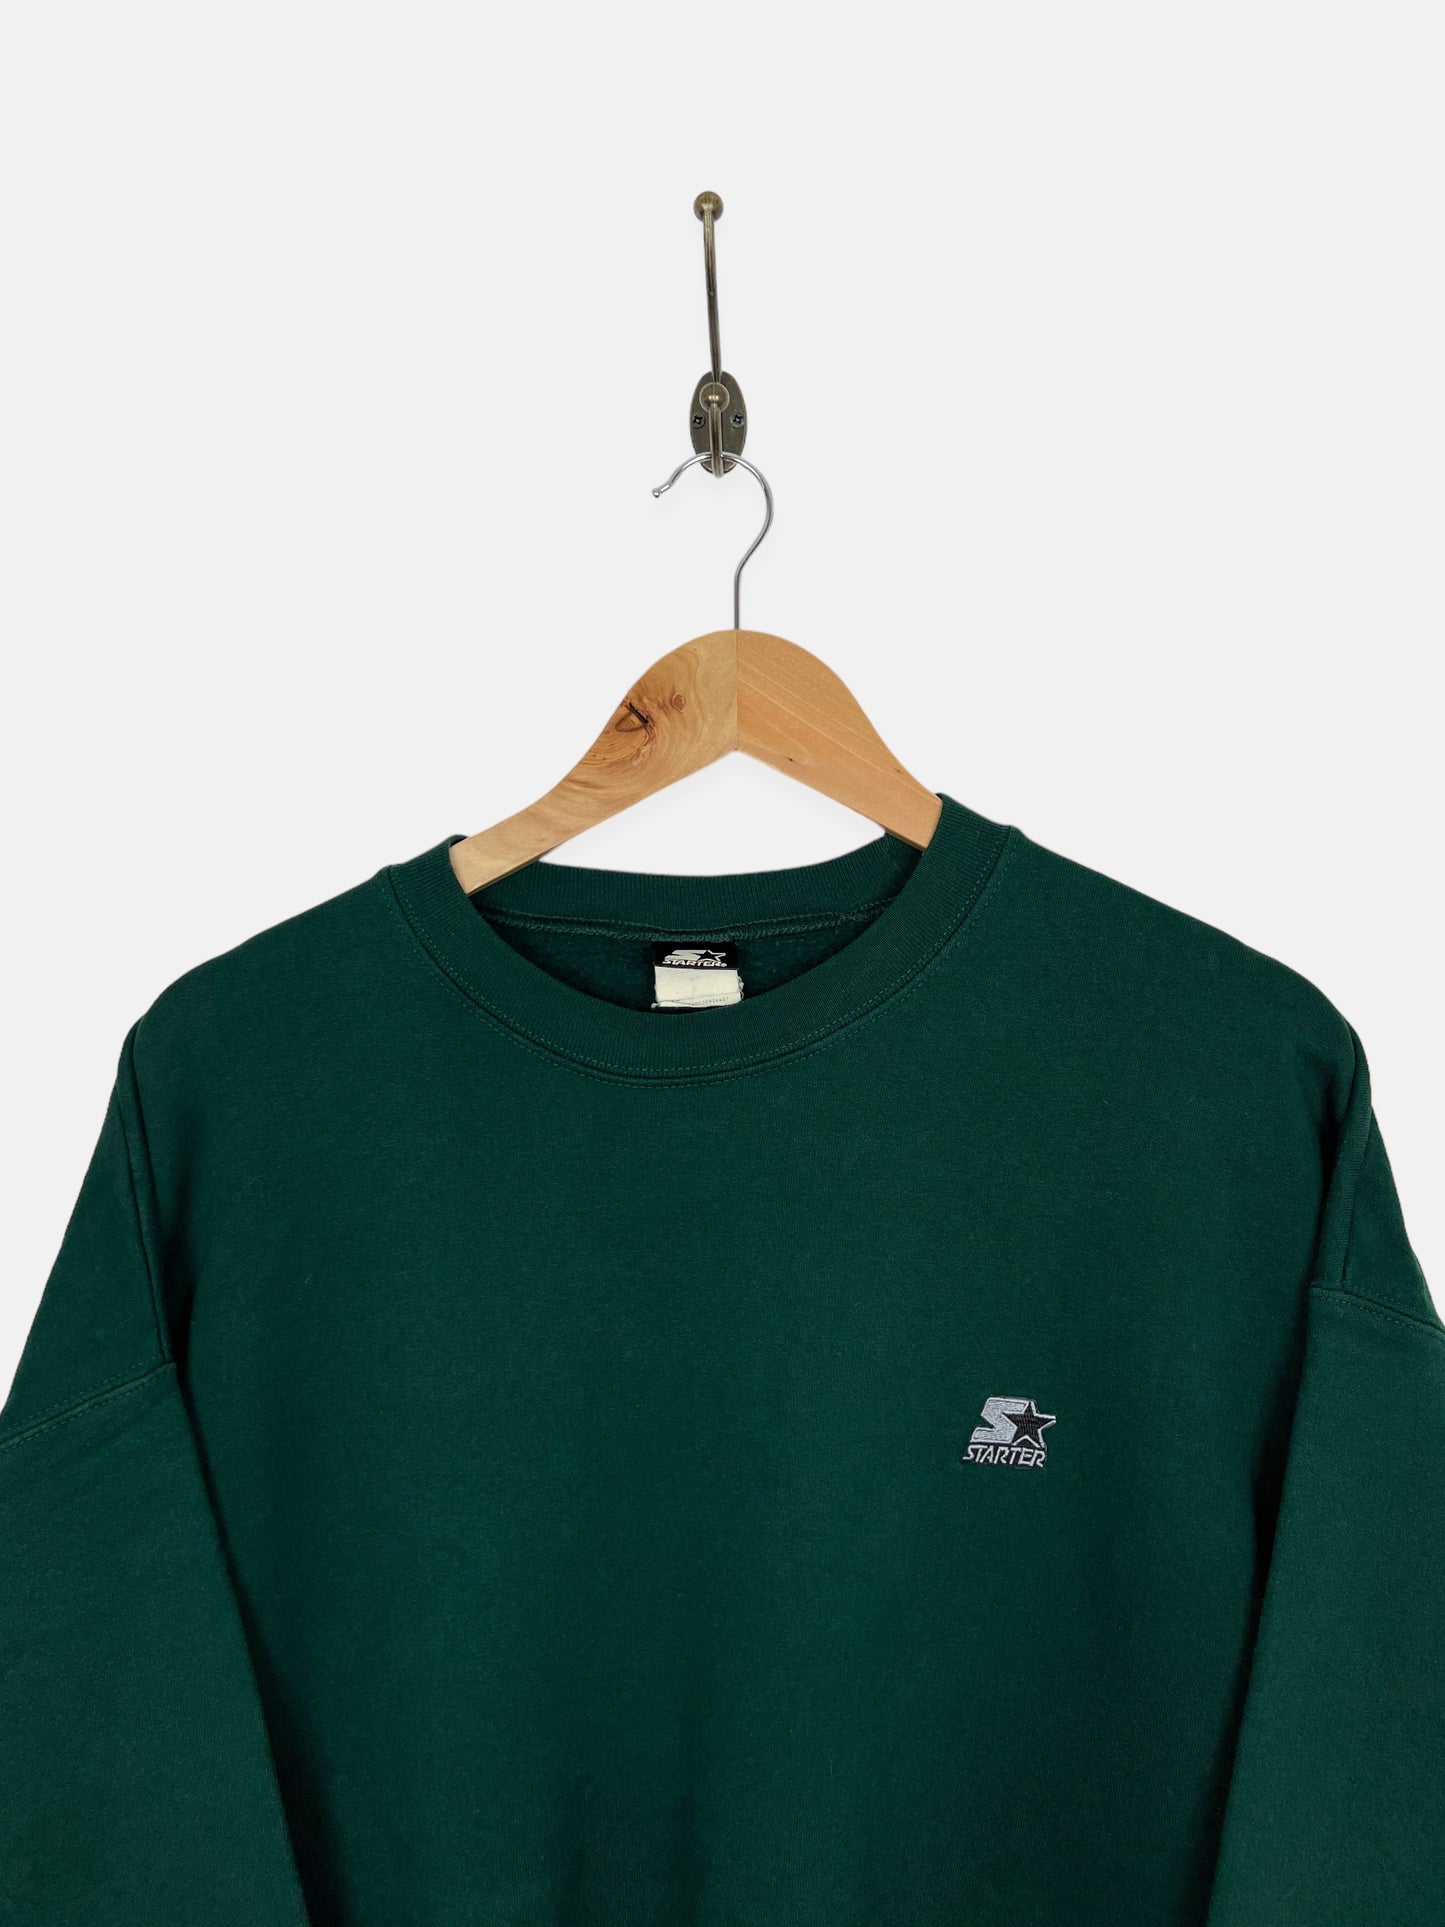 90's Starter Embroidered Vintage Sweatshirt Size XL